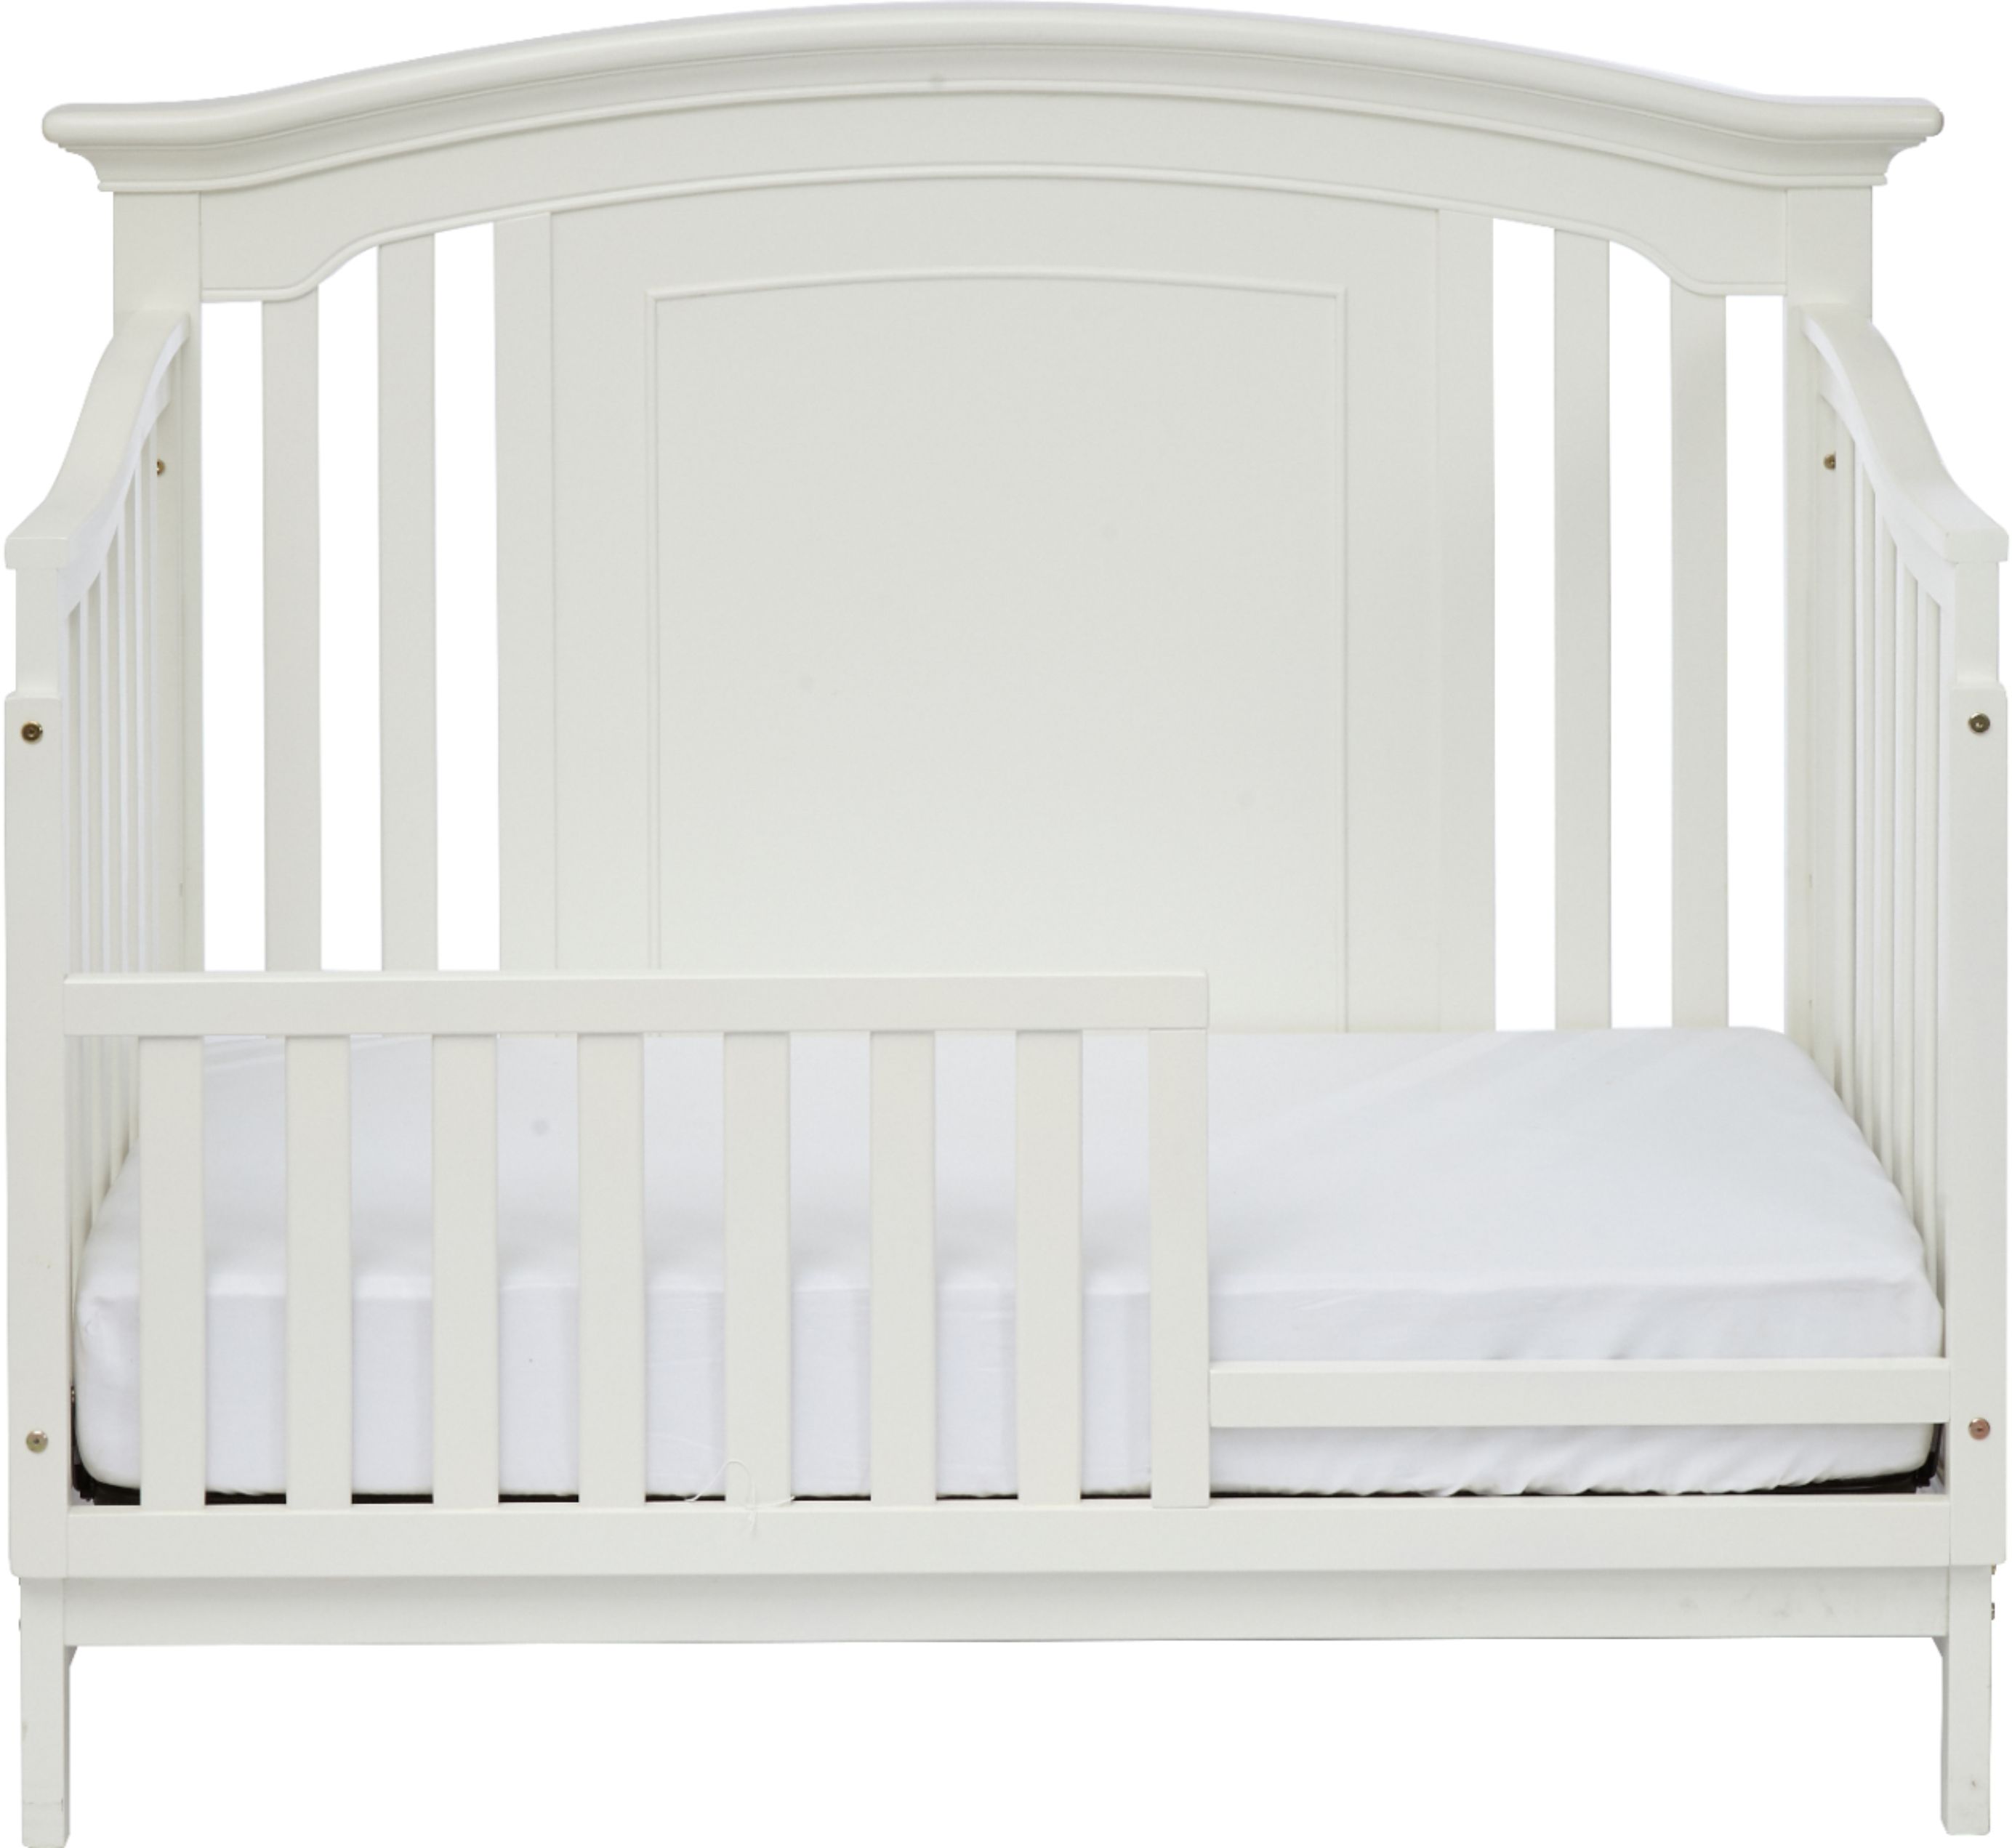 kingsley baby crib